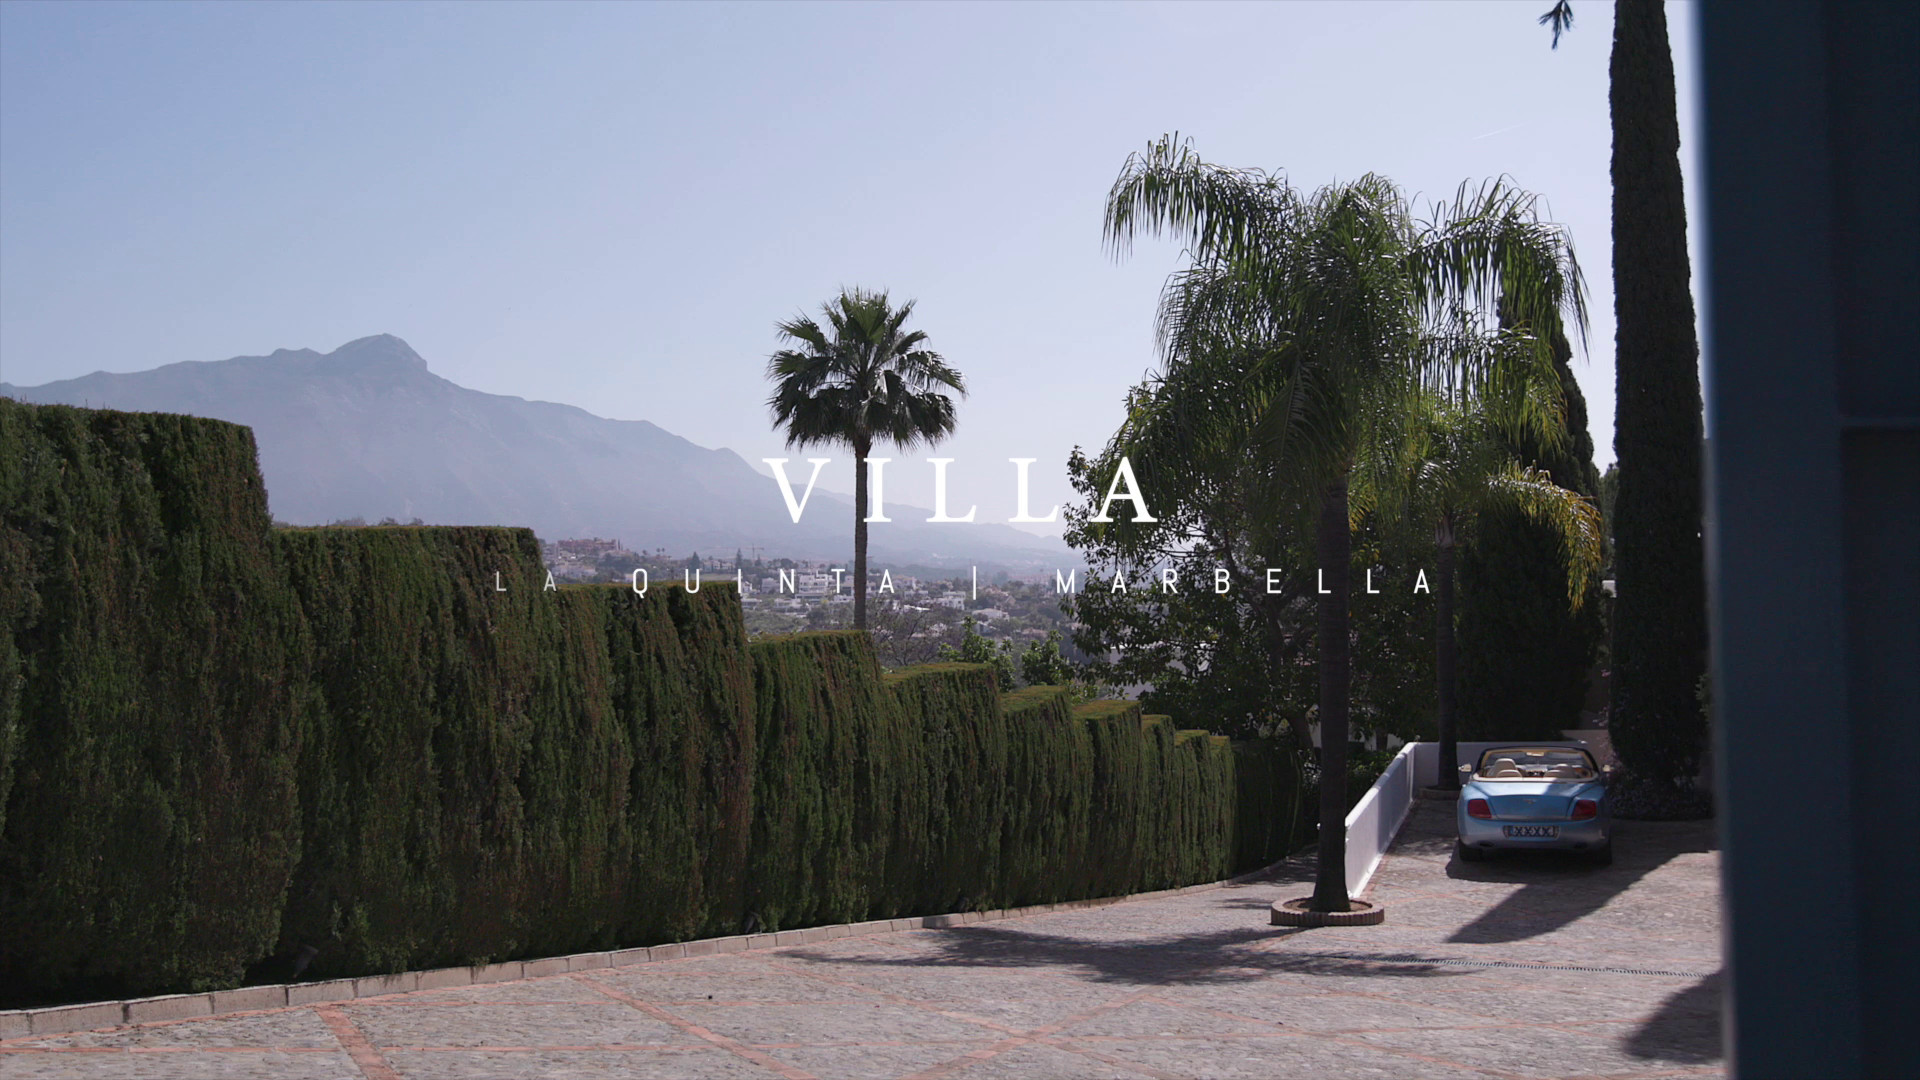 Preview image for the video "Impressive luxury villa in the heart of La Quinta".